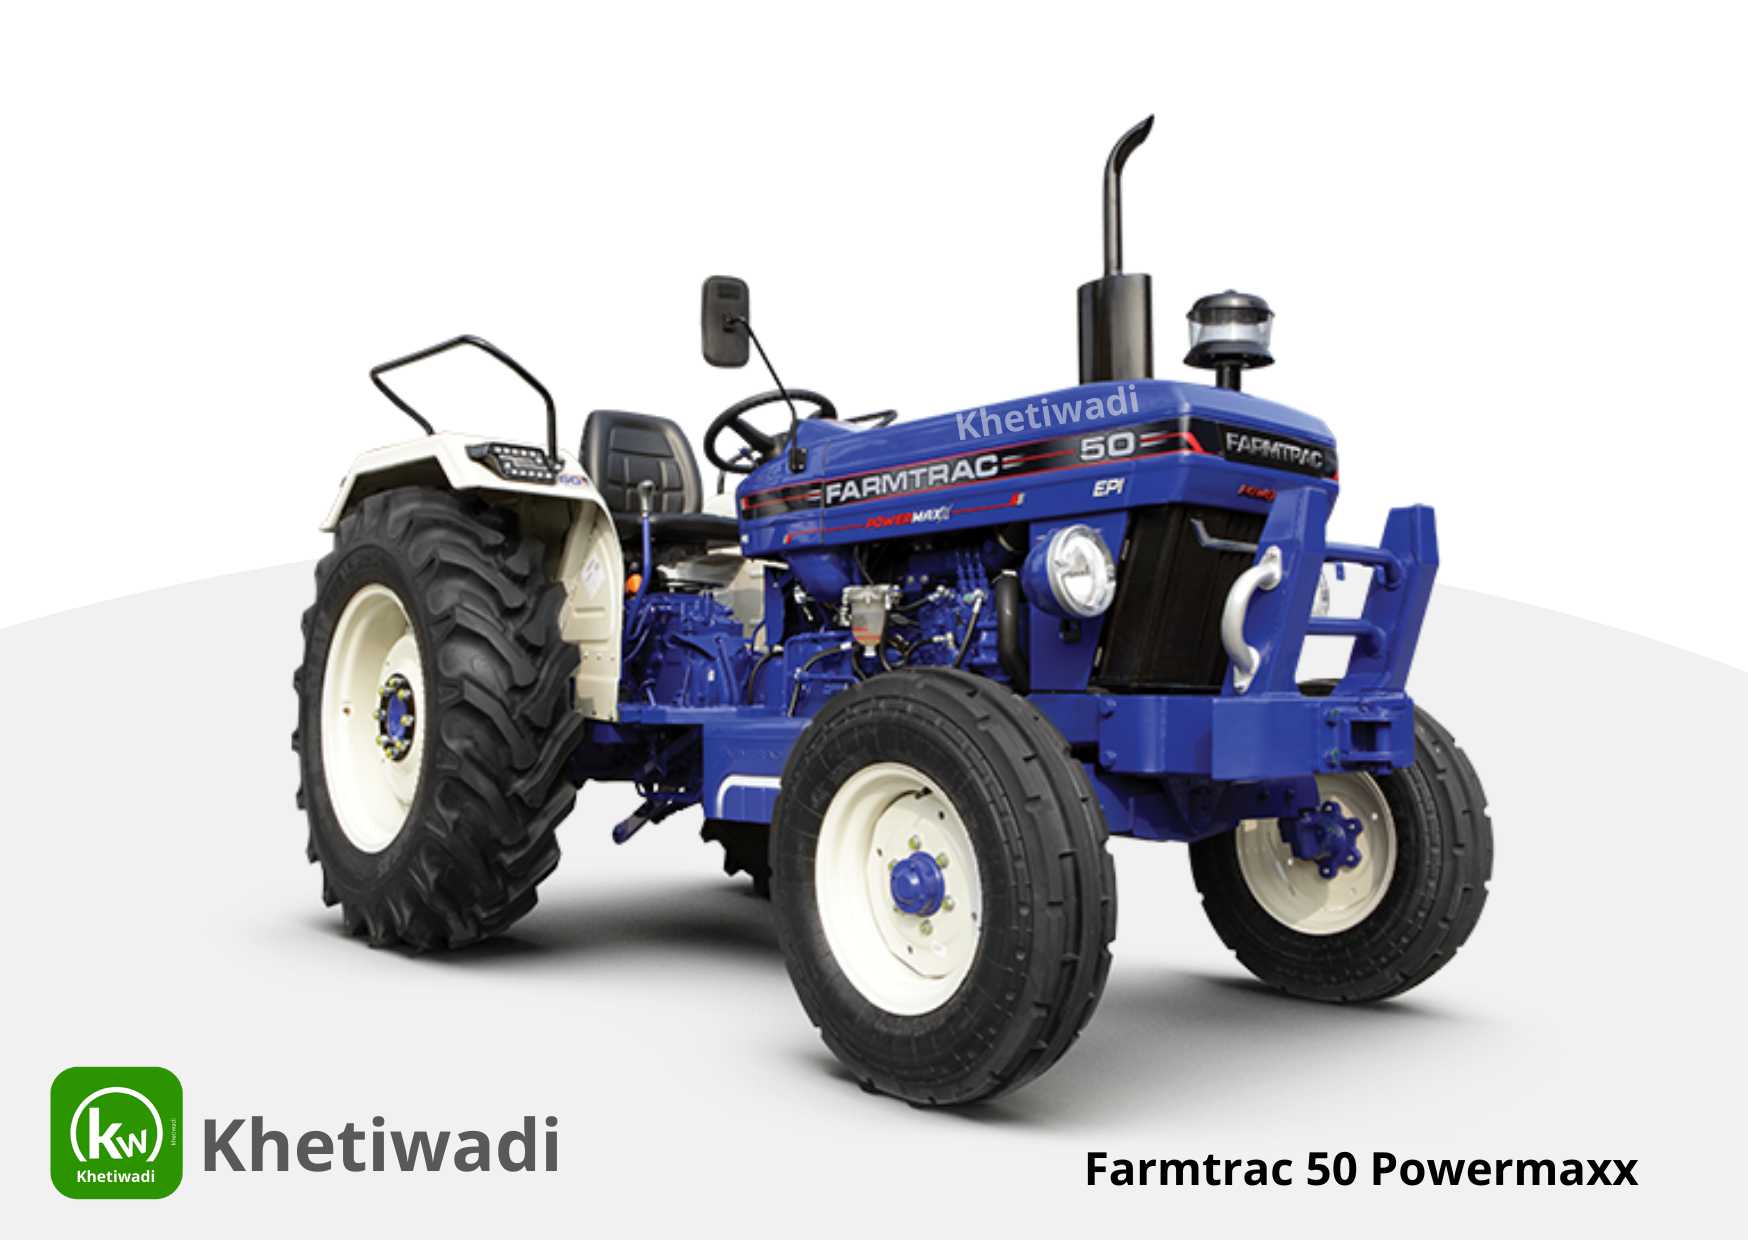 Farmtrac 50 Powermaxx full detail